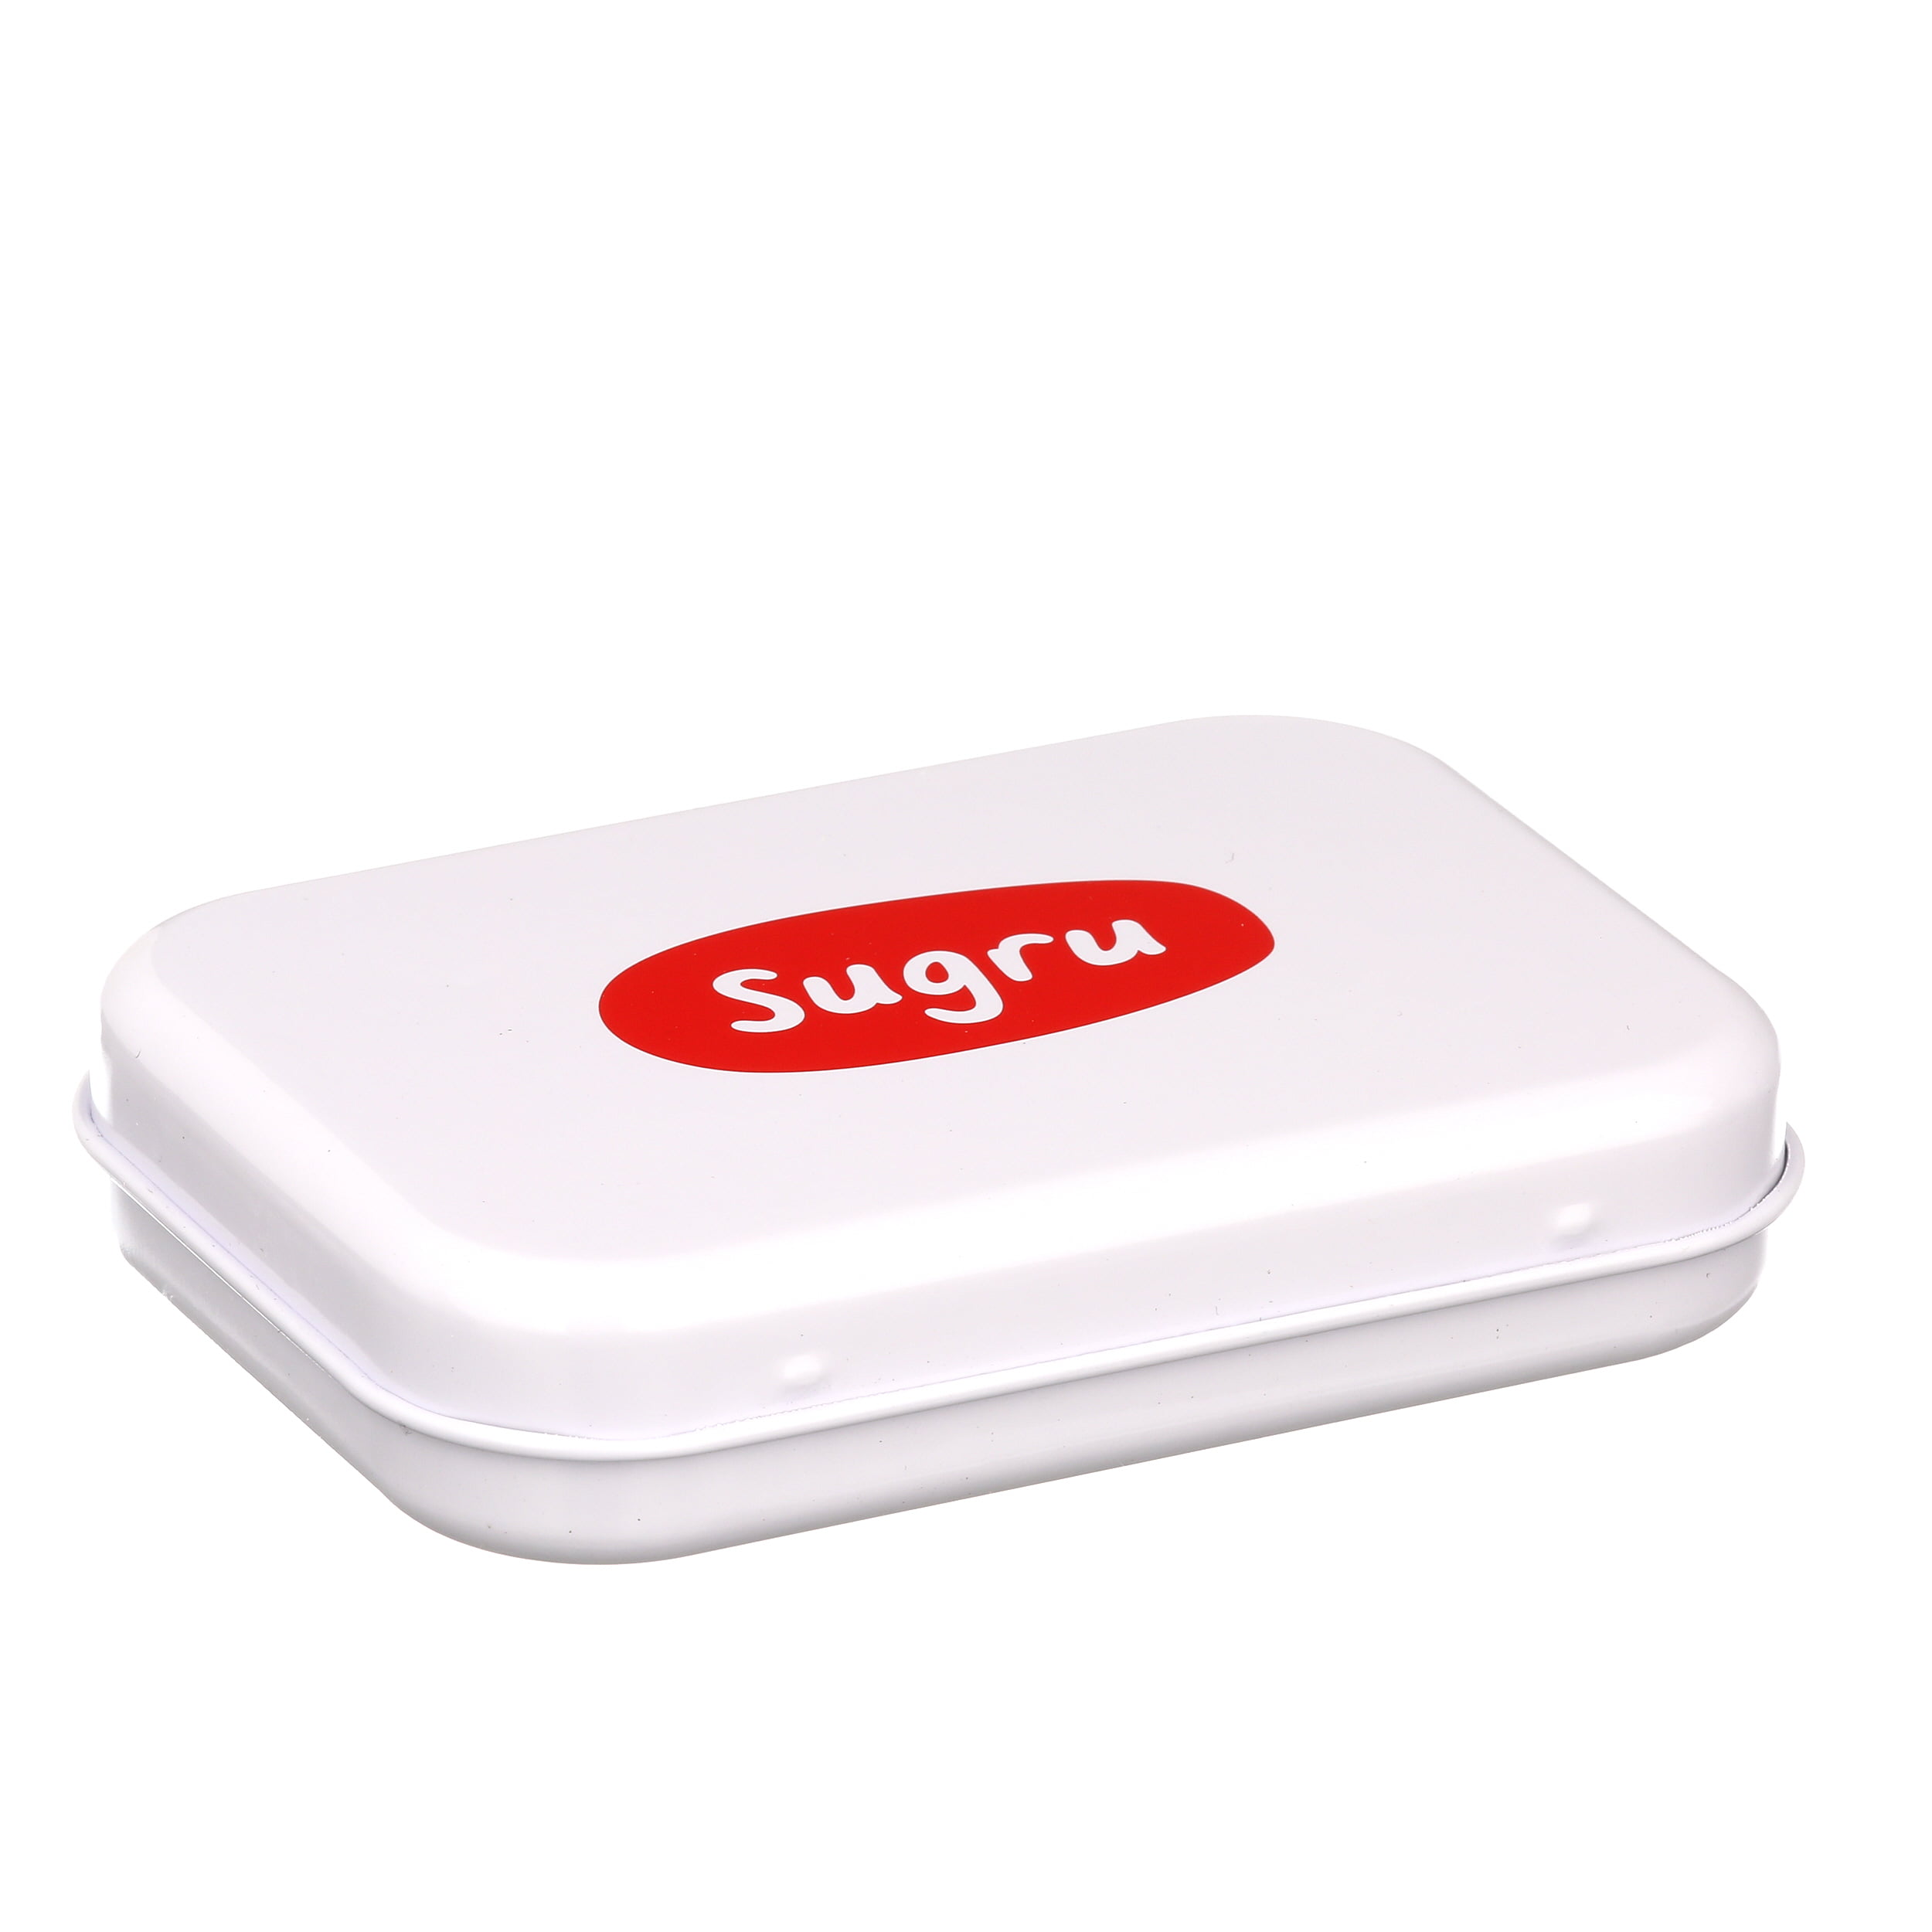 Sugru - 8 Pack (Mixed Colors) - TOL-11228 - SparkFun Electronics